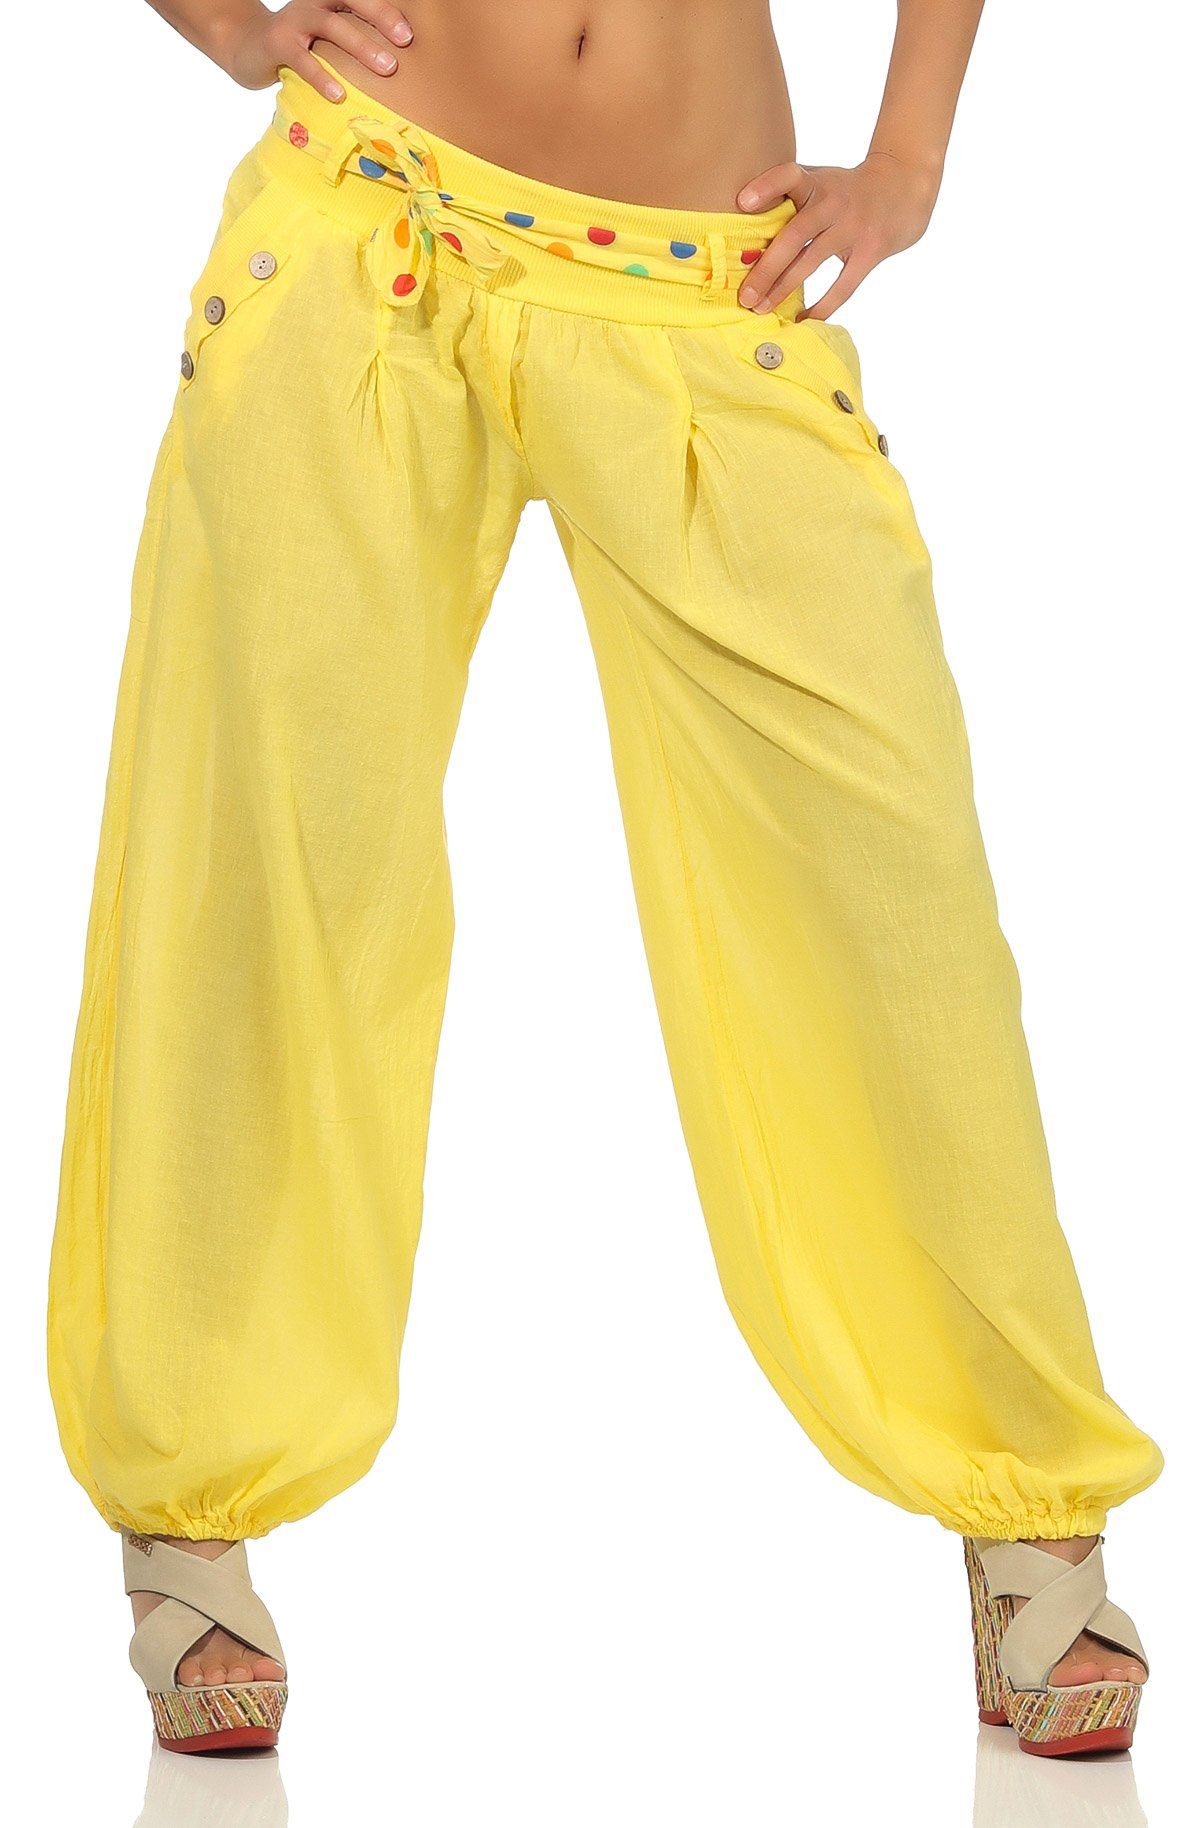 malito more than fashion Haremshose 3417 mit farblich passendem Stoffgürtel Einheitsgröße gelb